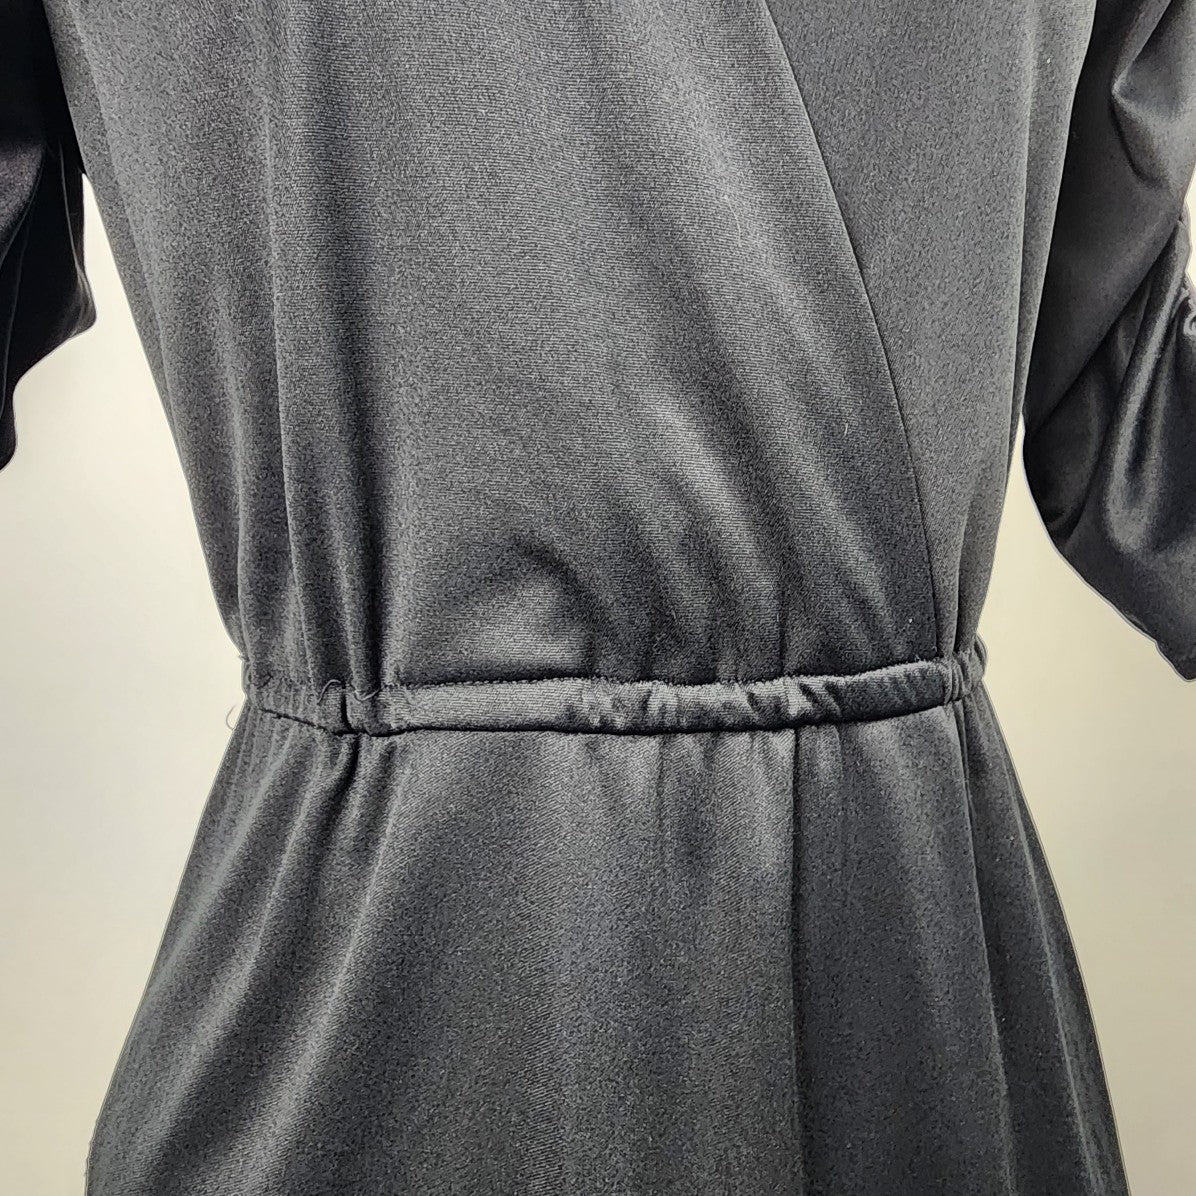 Vintage Black V Neck Ruched Sleeve Fit & Flare Dress Size S